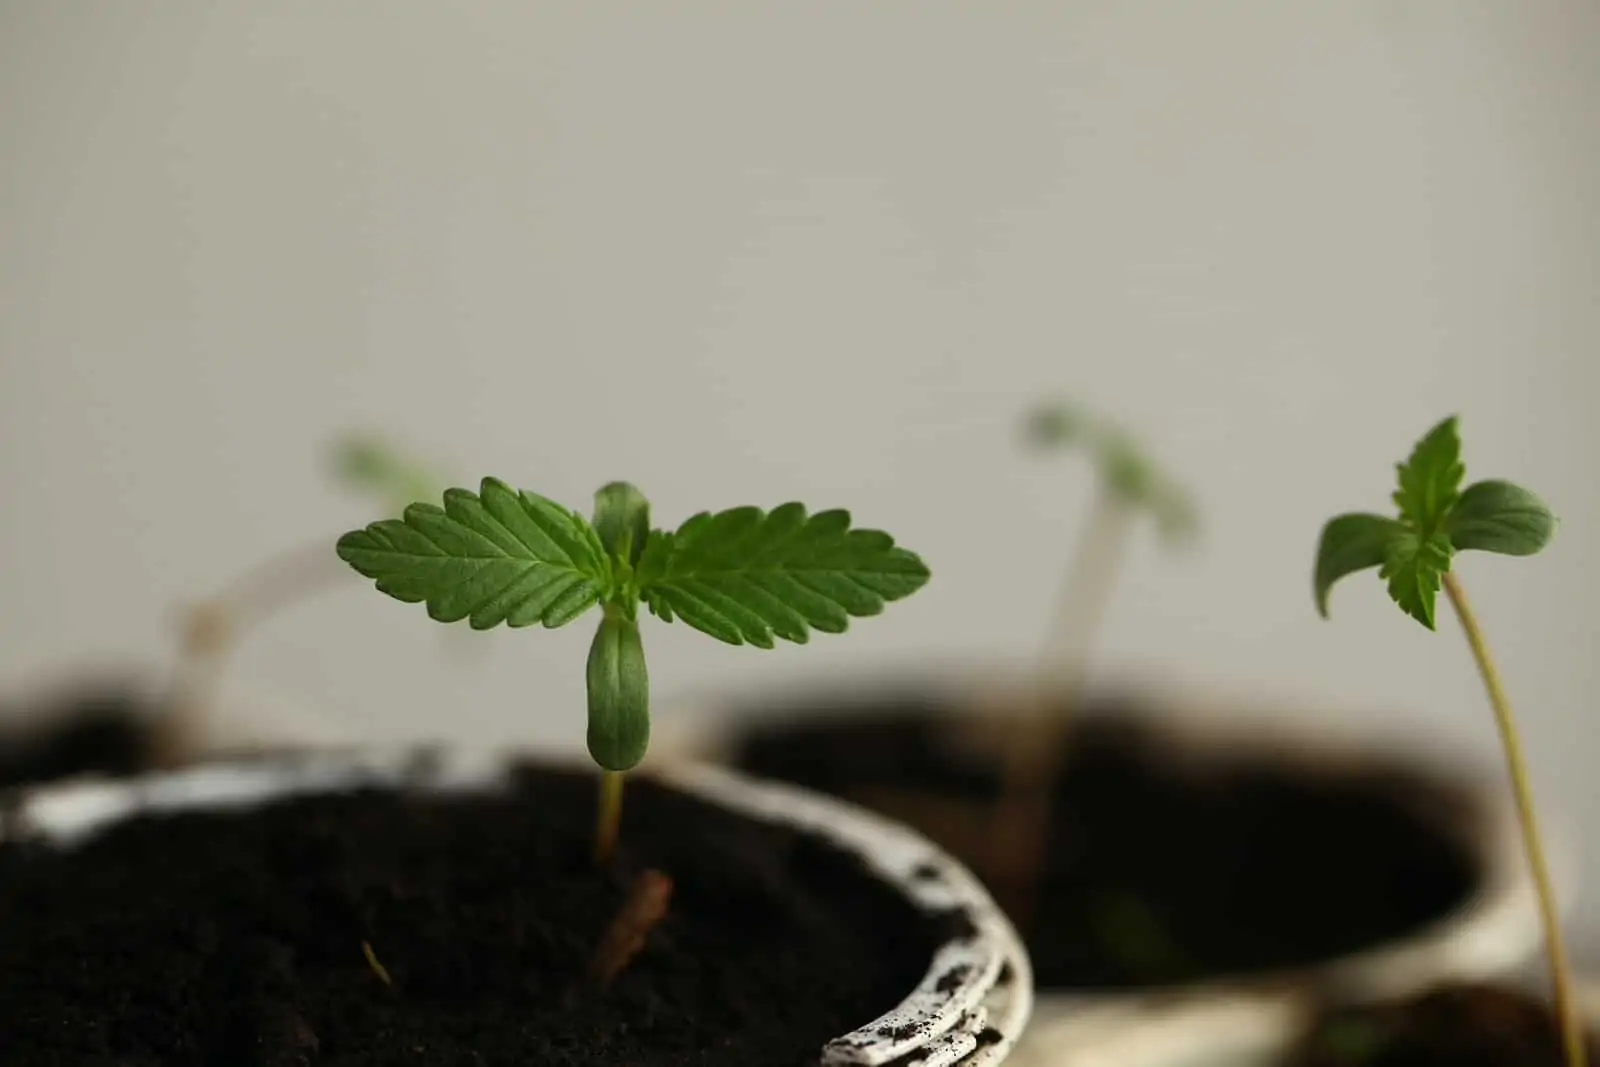 How to Grow a Small Marijuana Plant